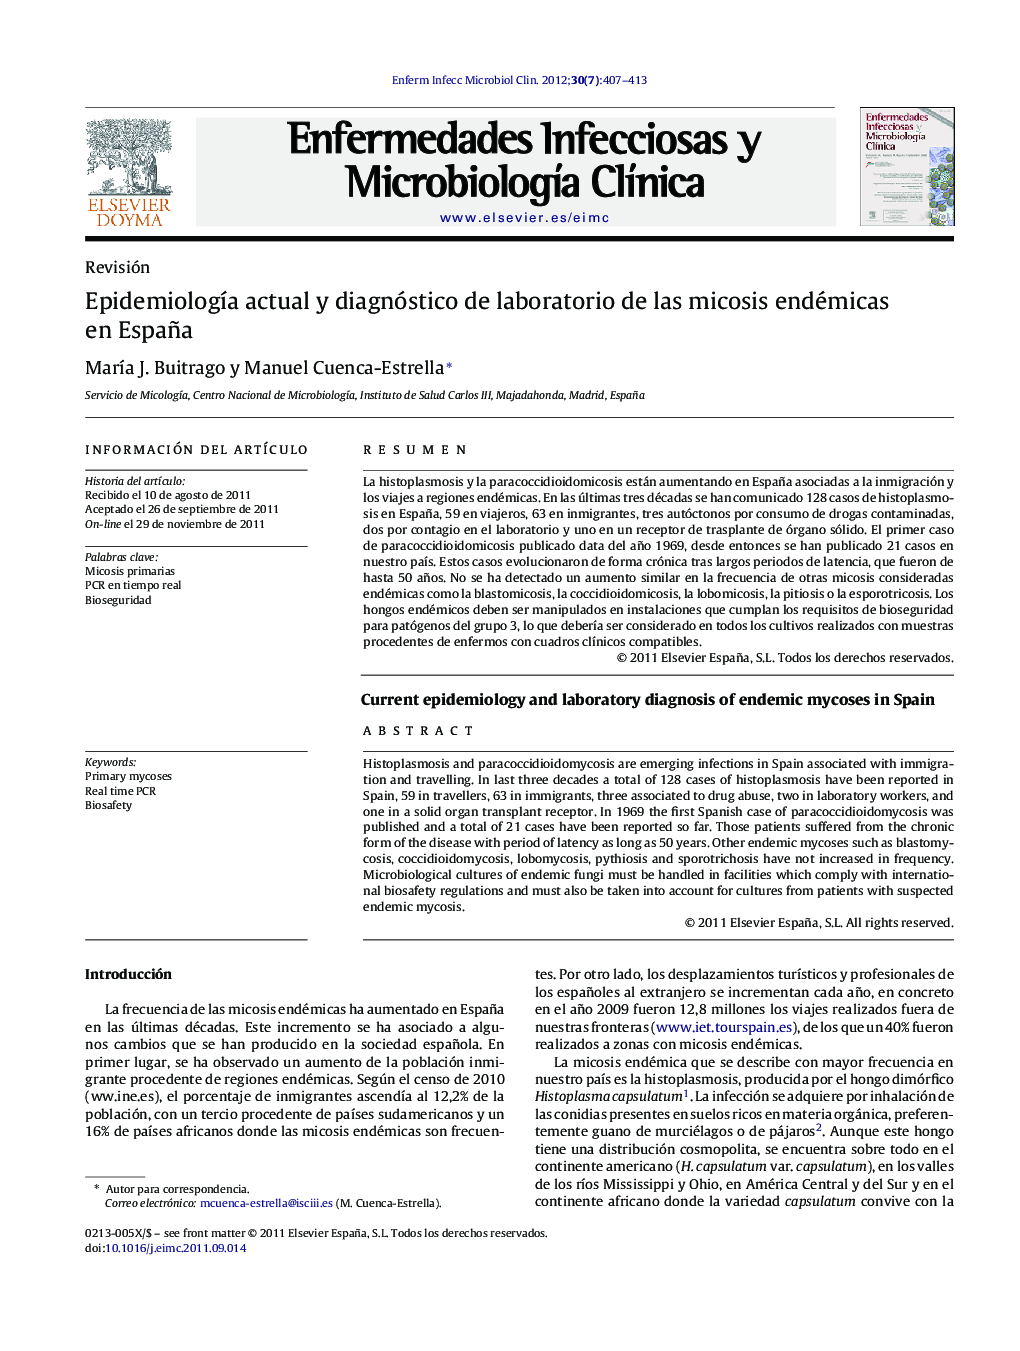 Epidemiología actual y diagnóstico de laboratorio de las micosis endémicas en España